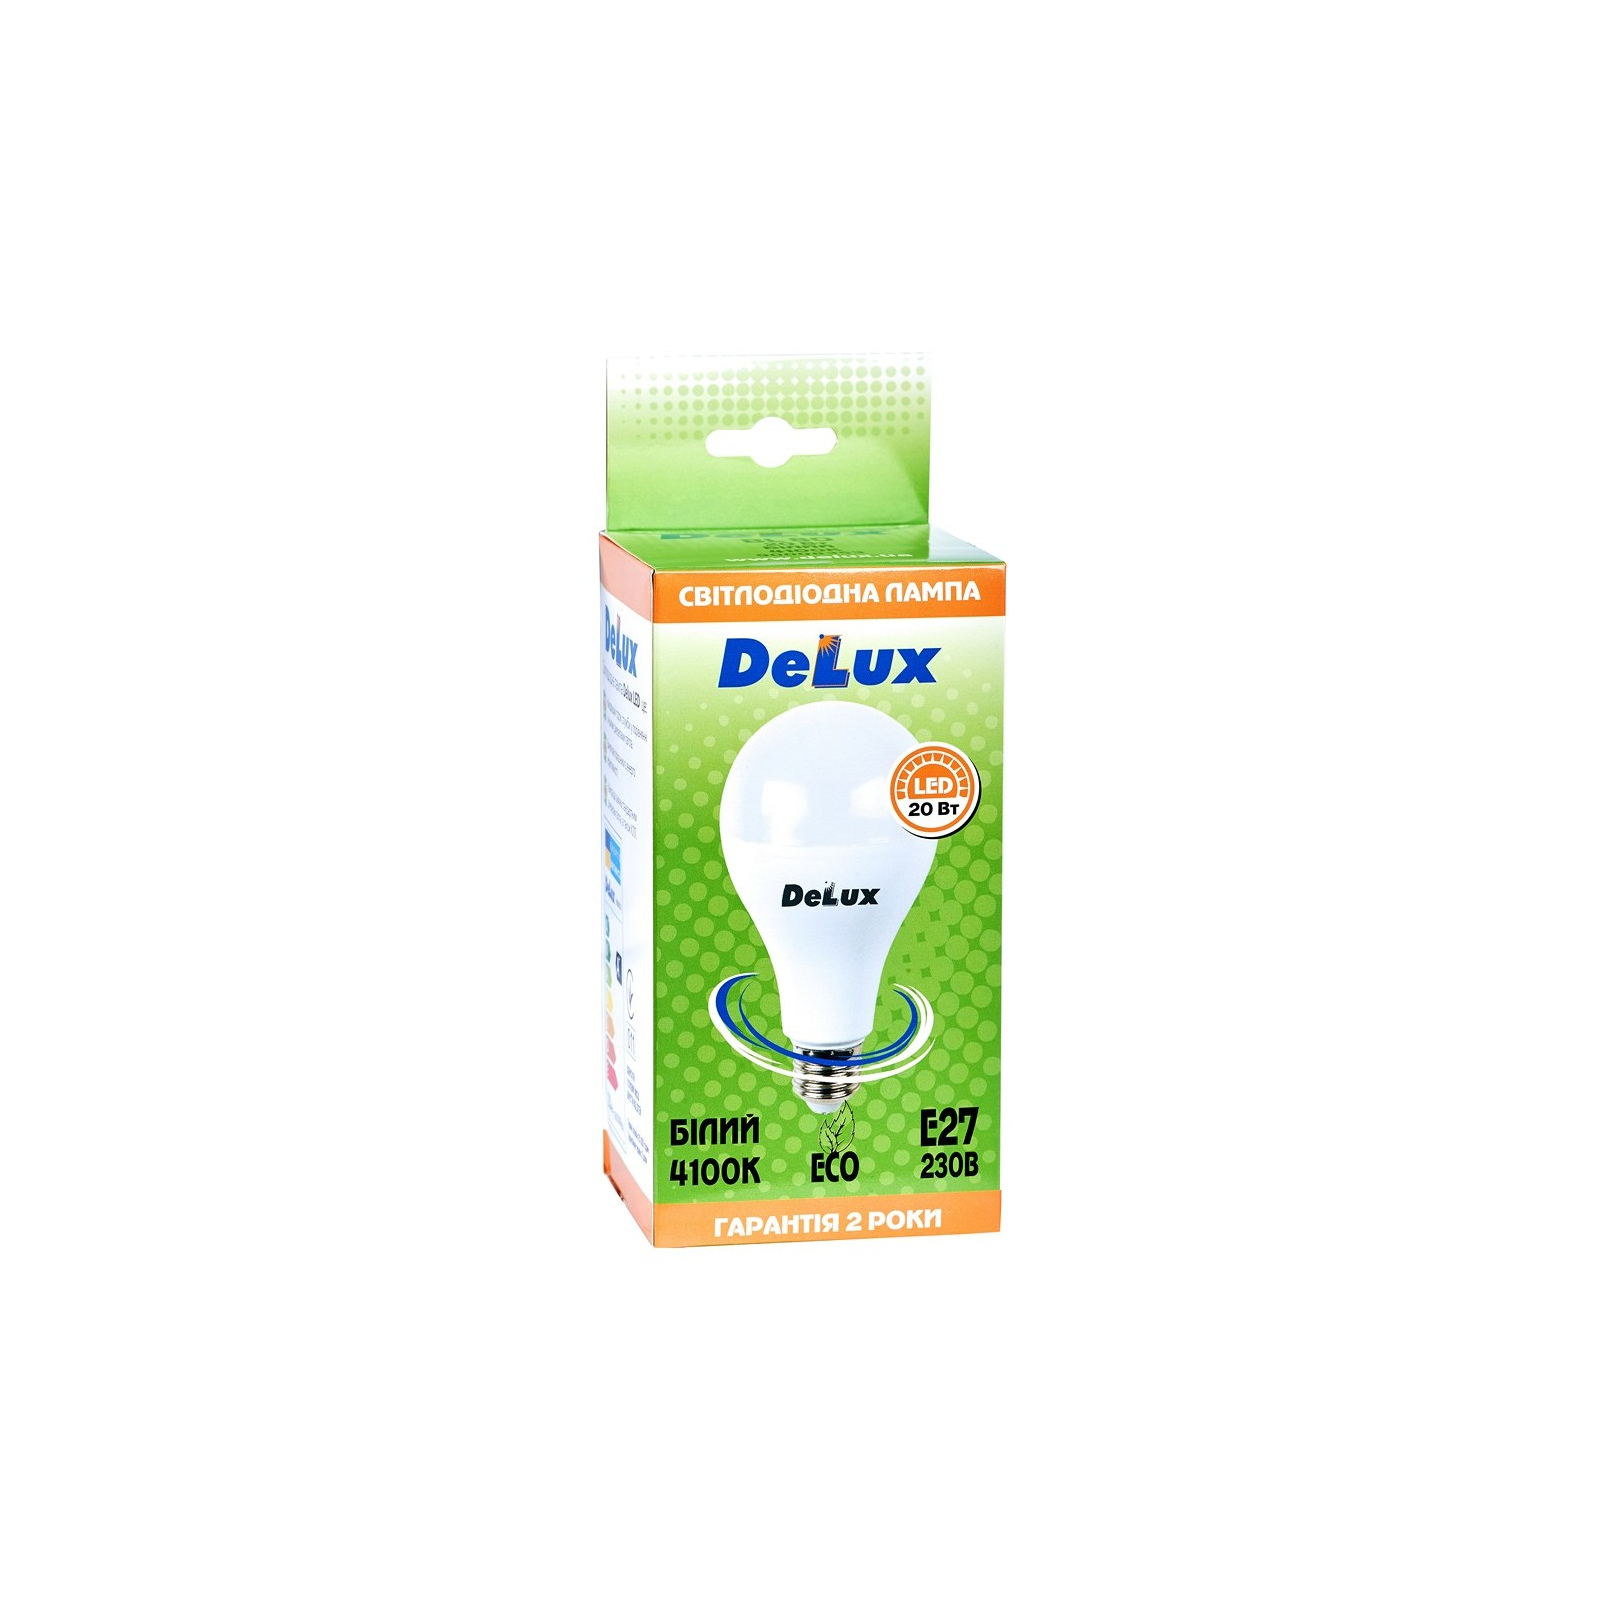 Лампочка Delux BL 80 20 Вт 4100K (90020553) зображення 2